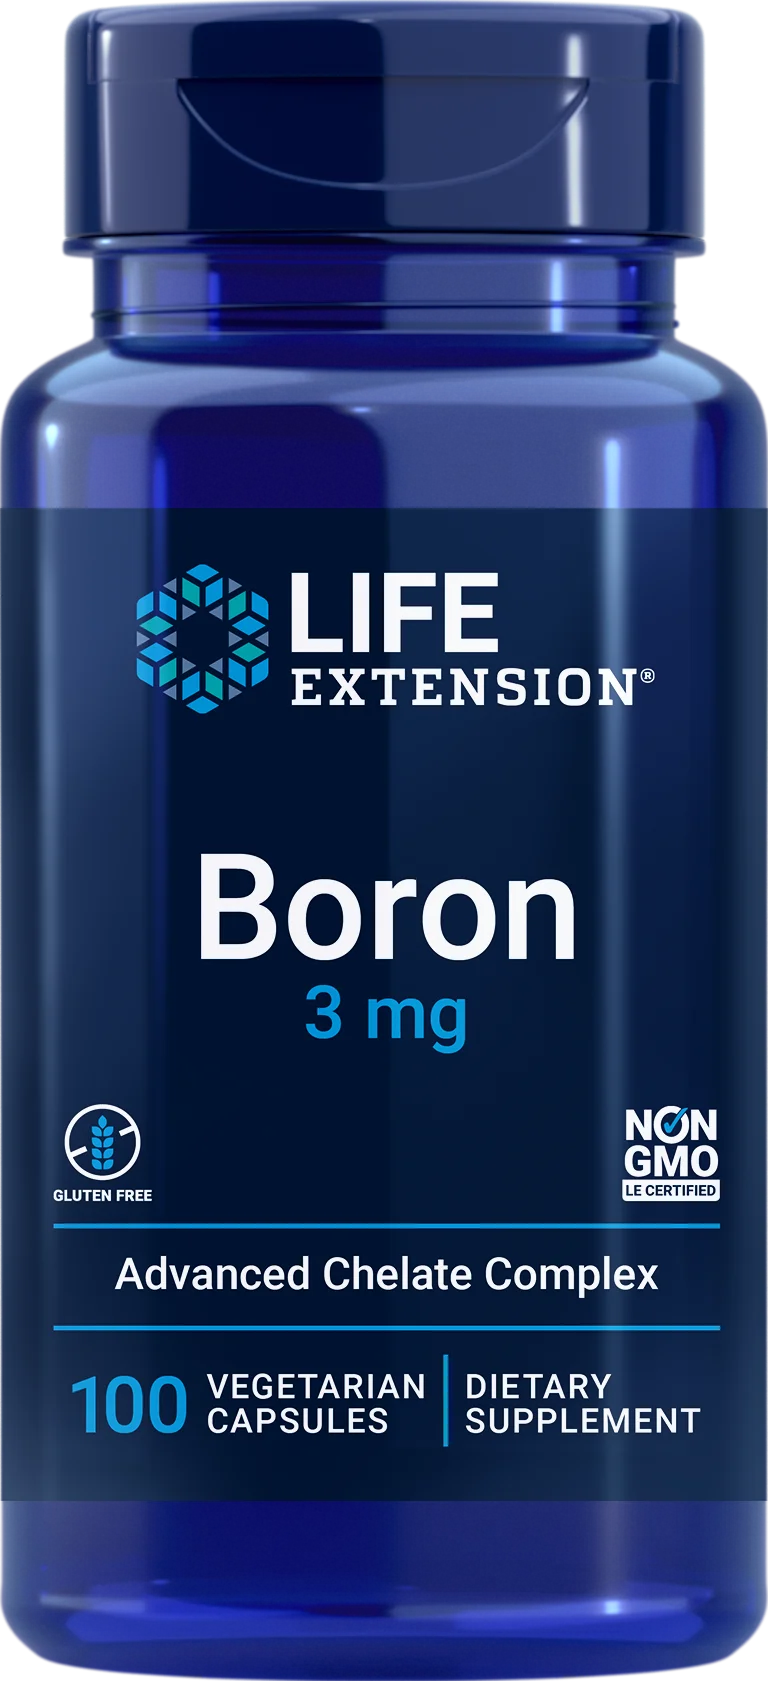 Life Extension Boron-Life Extension-Hyvinvoinnin Tavaratalo